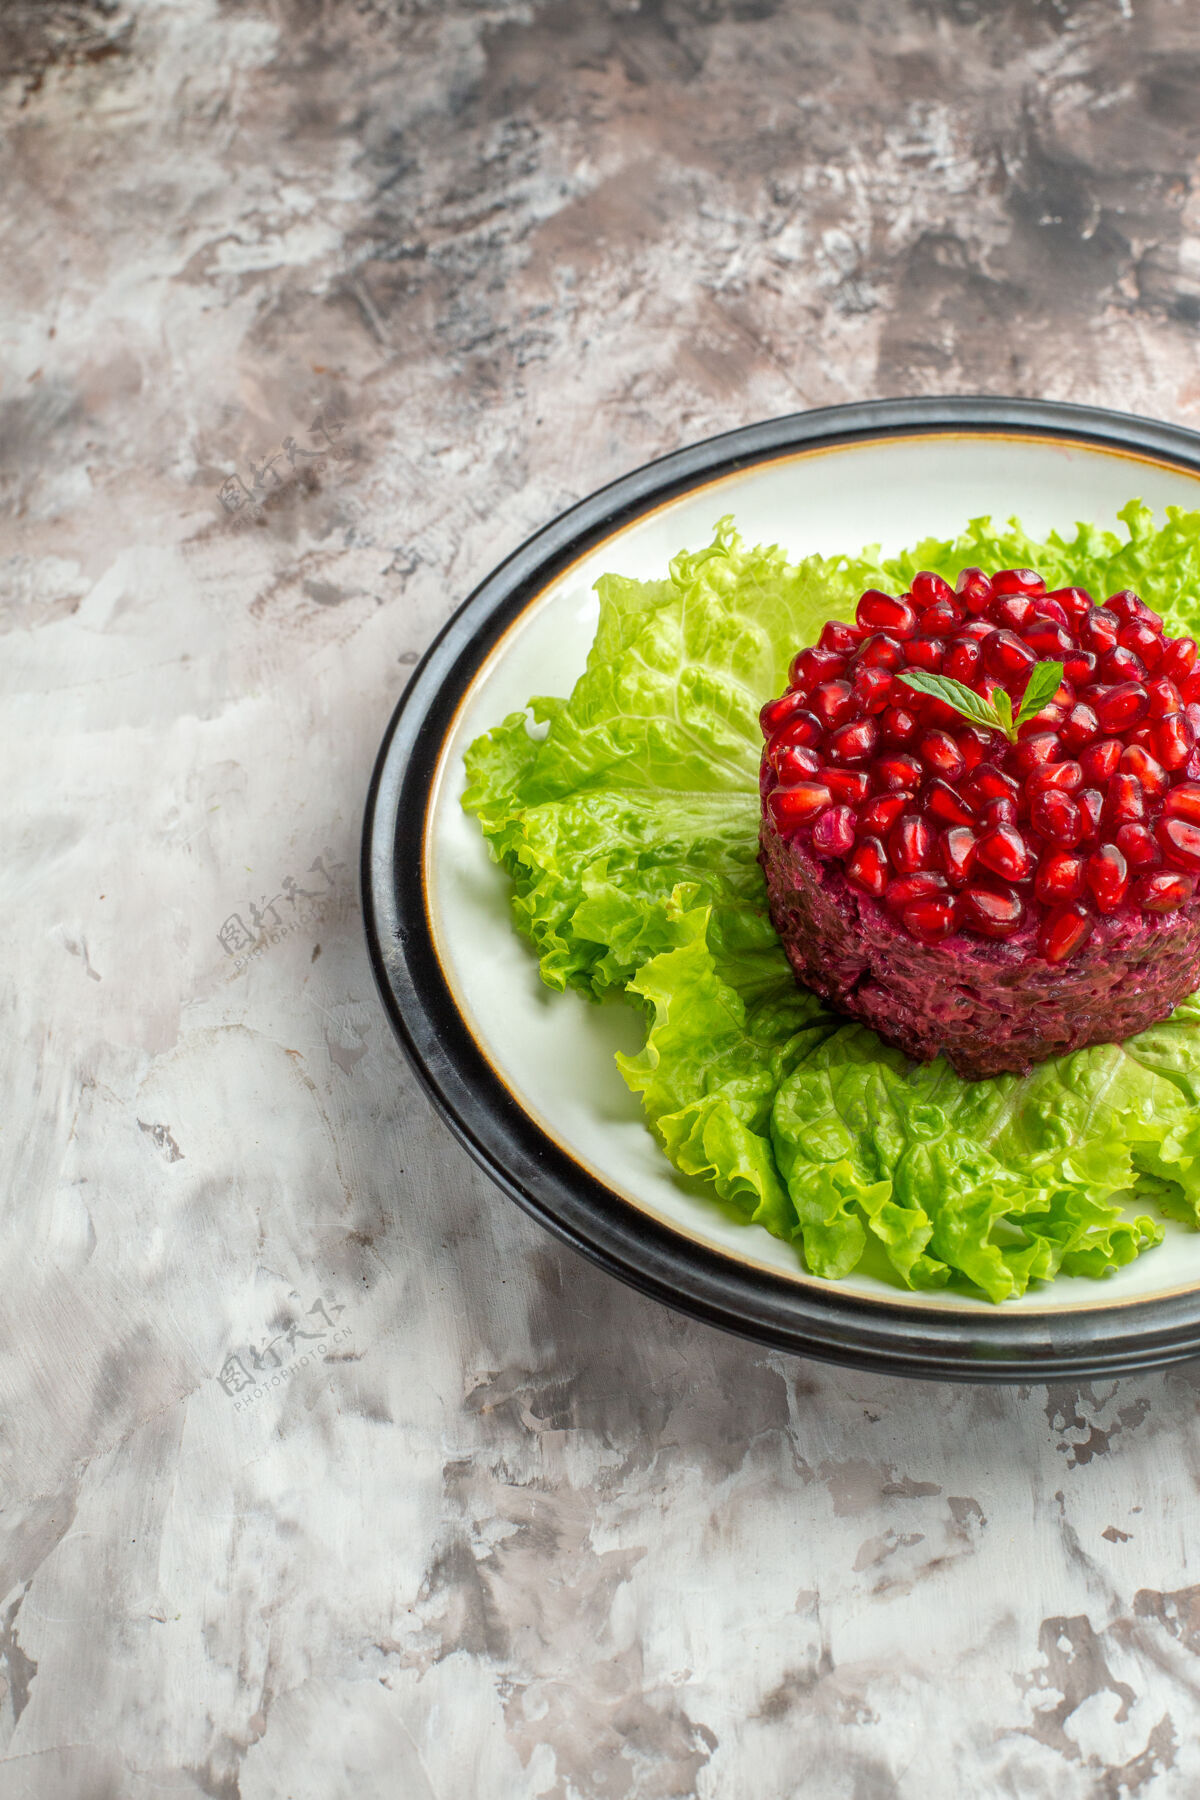 膳食正面是美味的石榴沙拉 圆形的绿色沙拉 背景是清淡的饮食保健餐健康正面浆果